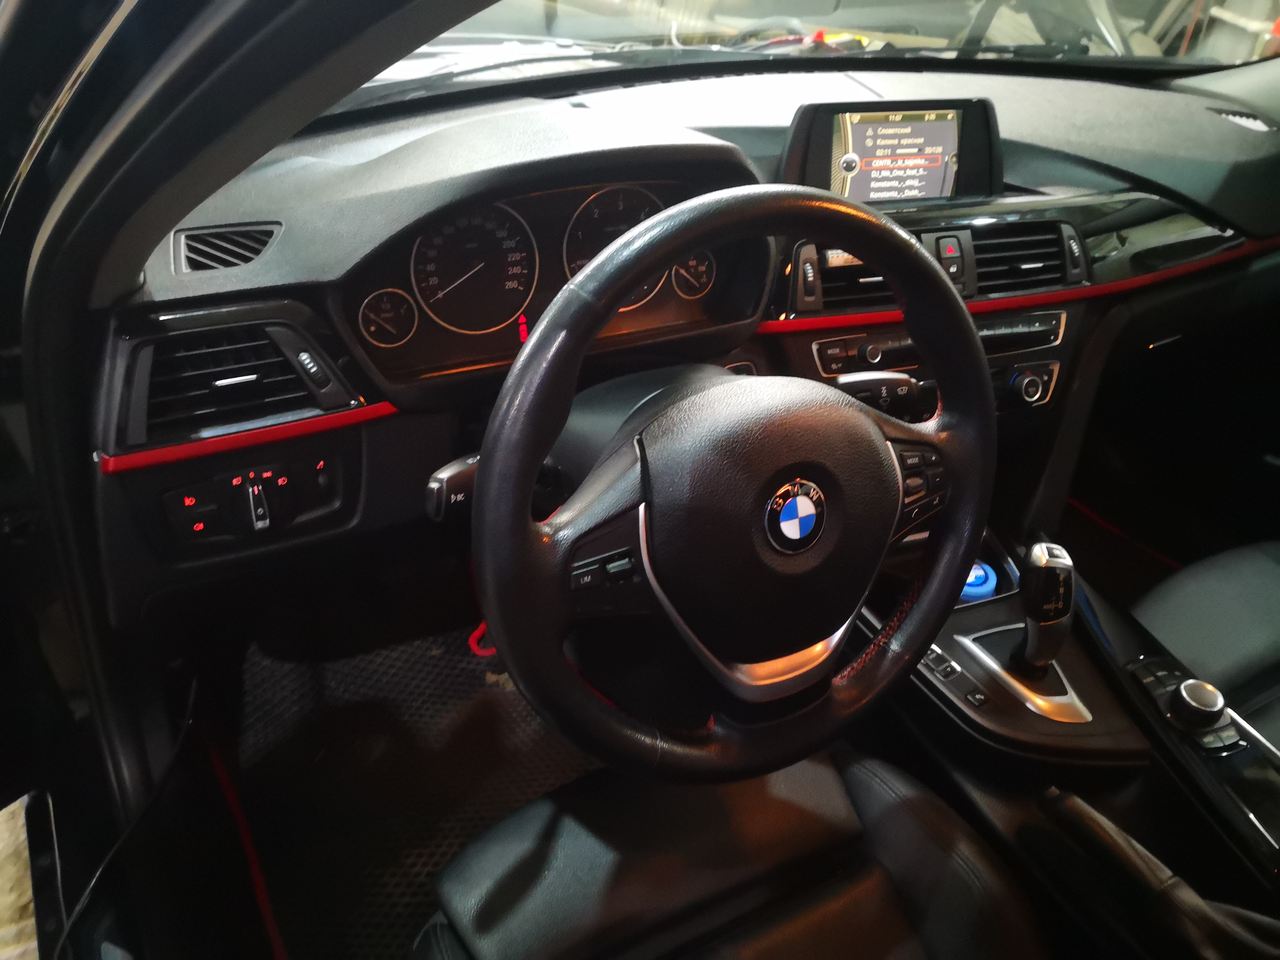 салон BMW F30 320i 2016 г.в. перед дооснащением